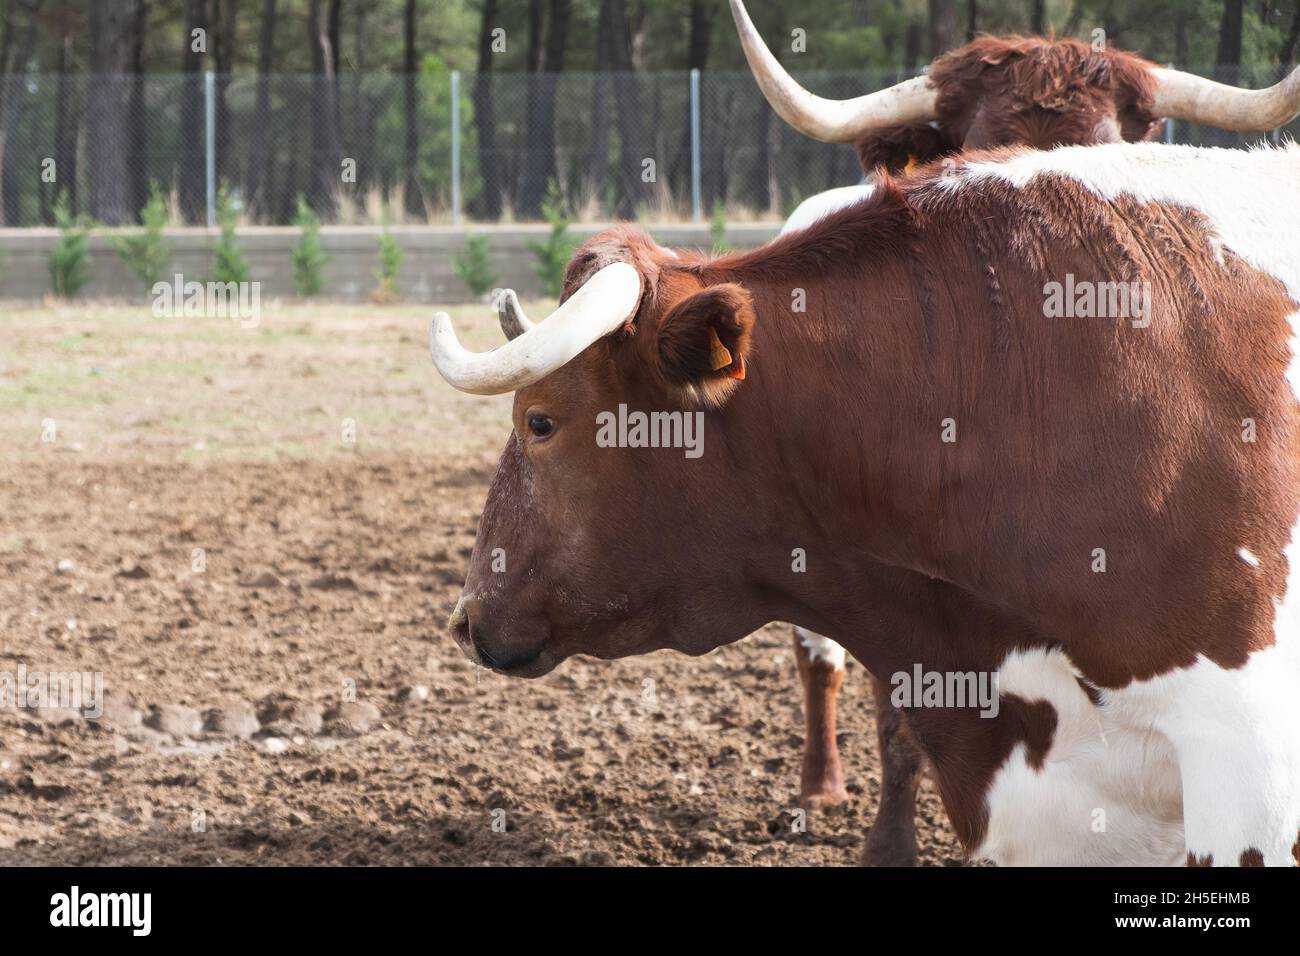 Gros plan de la tête d'une vache sur une ferme Banque D'Images